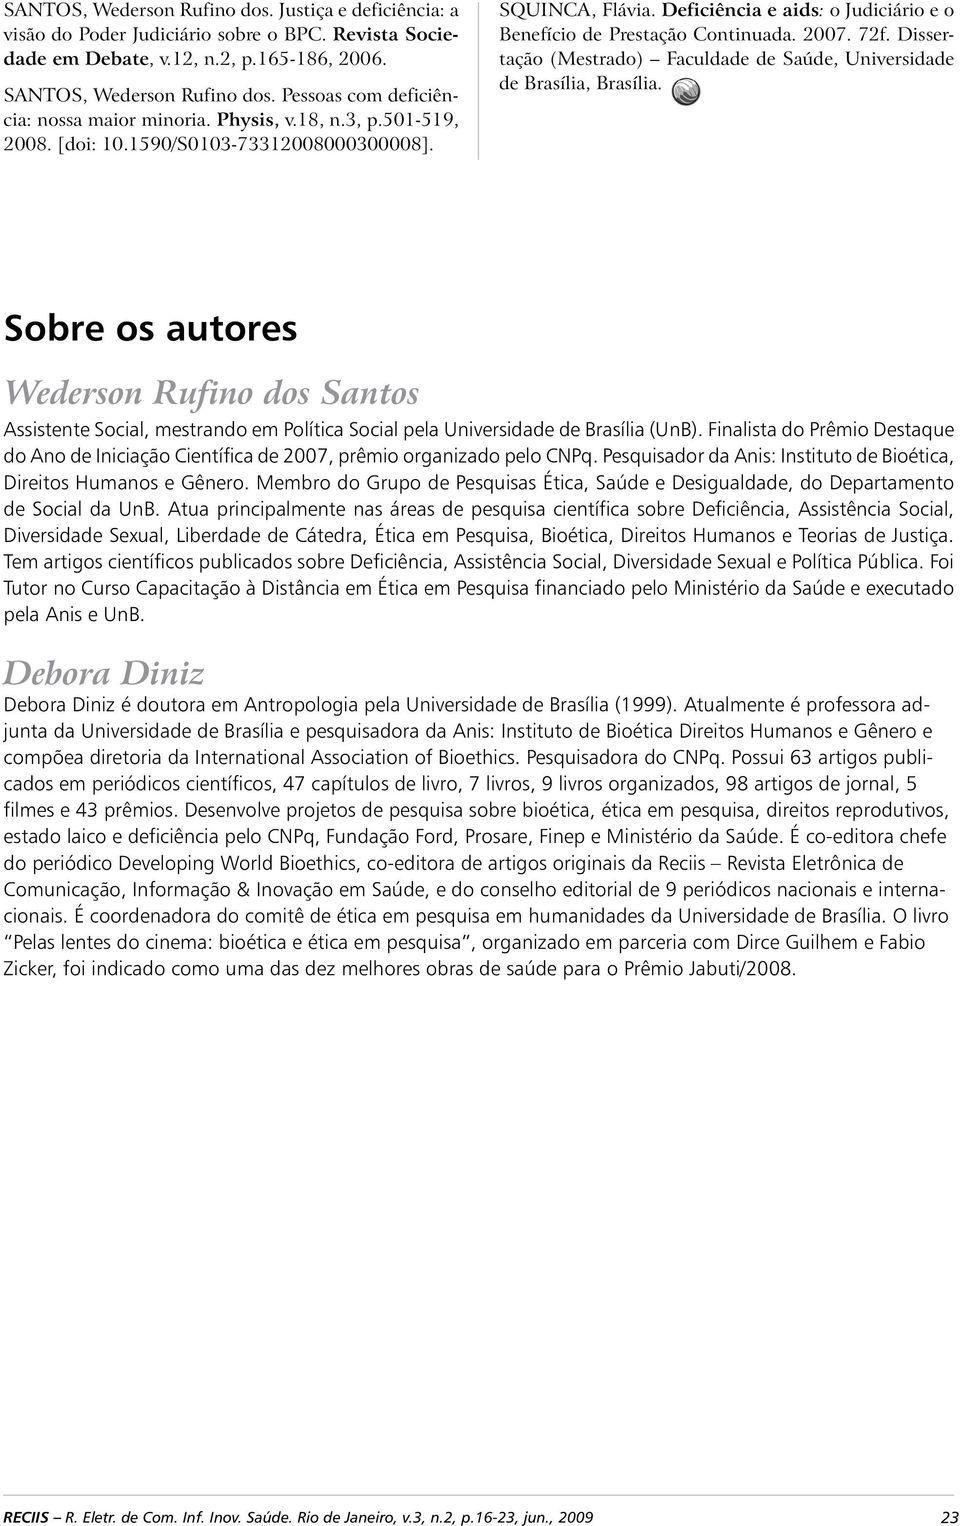 Deficiência e aids: o Judiciário e o Benefício de Prestação Continuada. 2007. 72f. Dissertação (Mestrado) Faculdade de Saúde, Universidade de Brasília, Brasília.